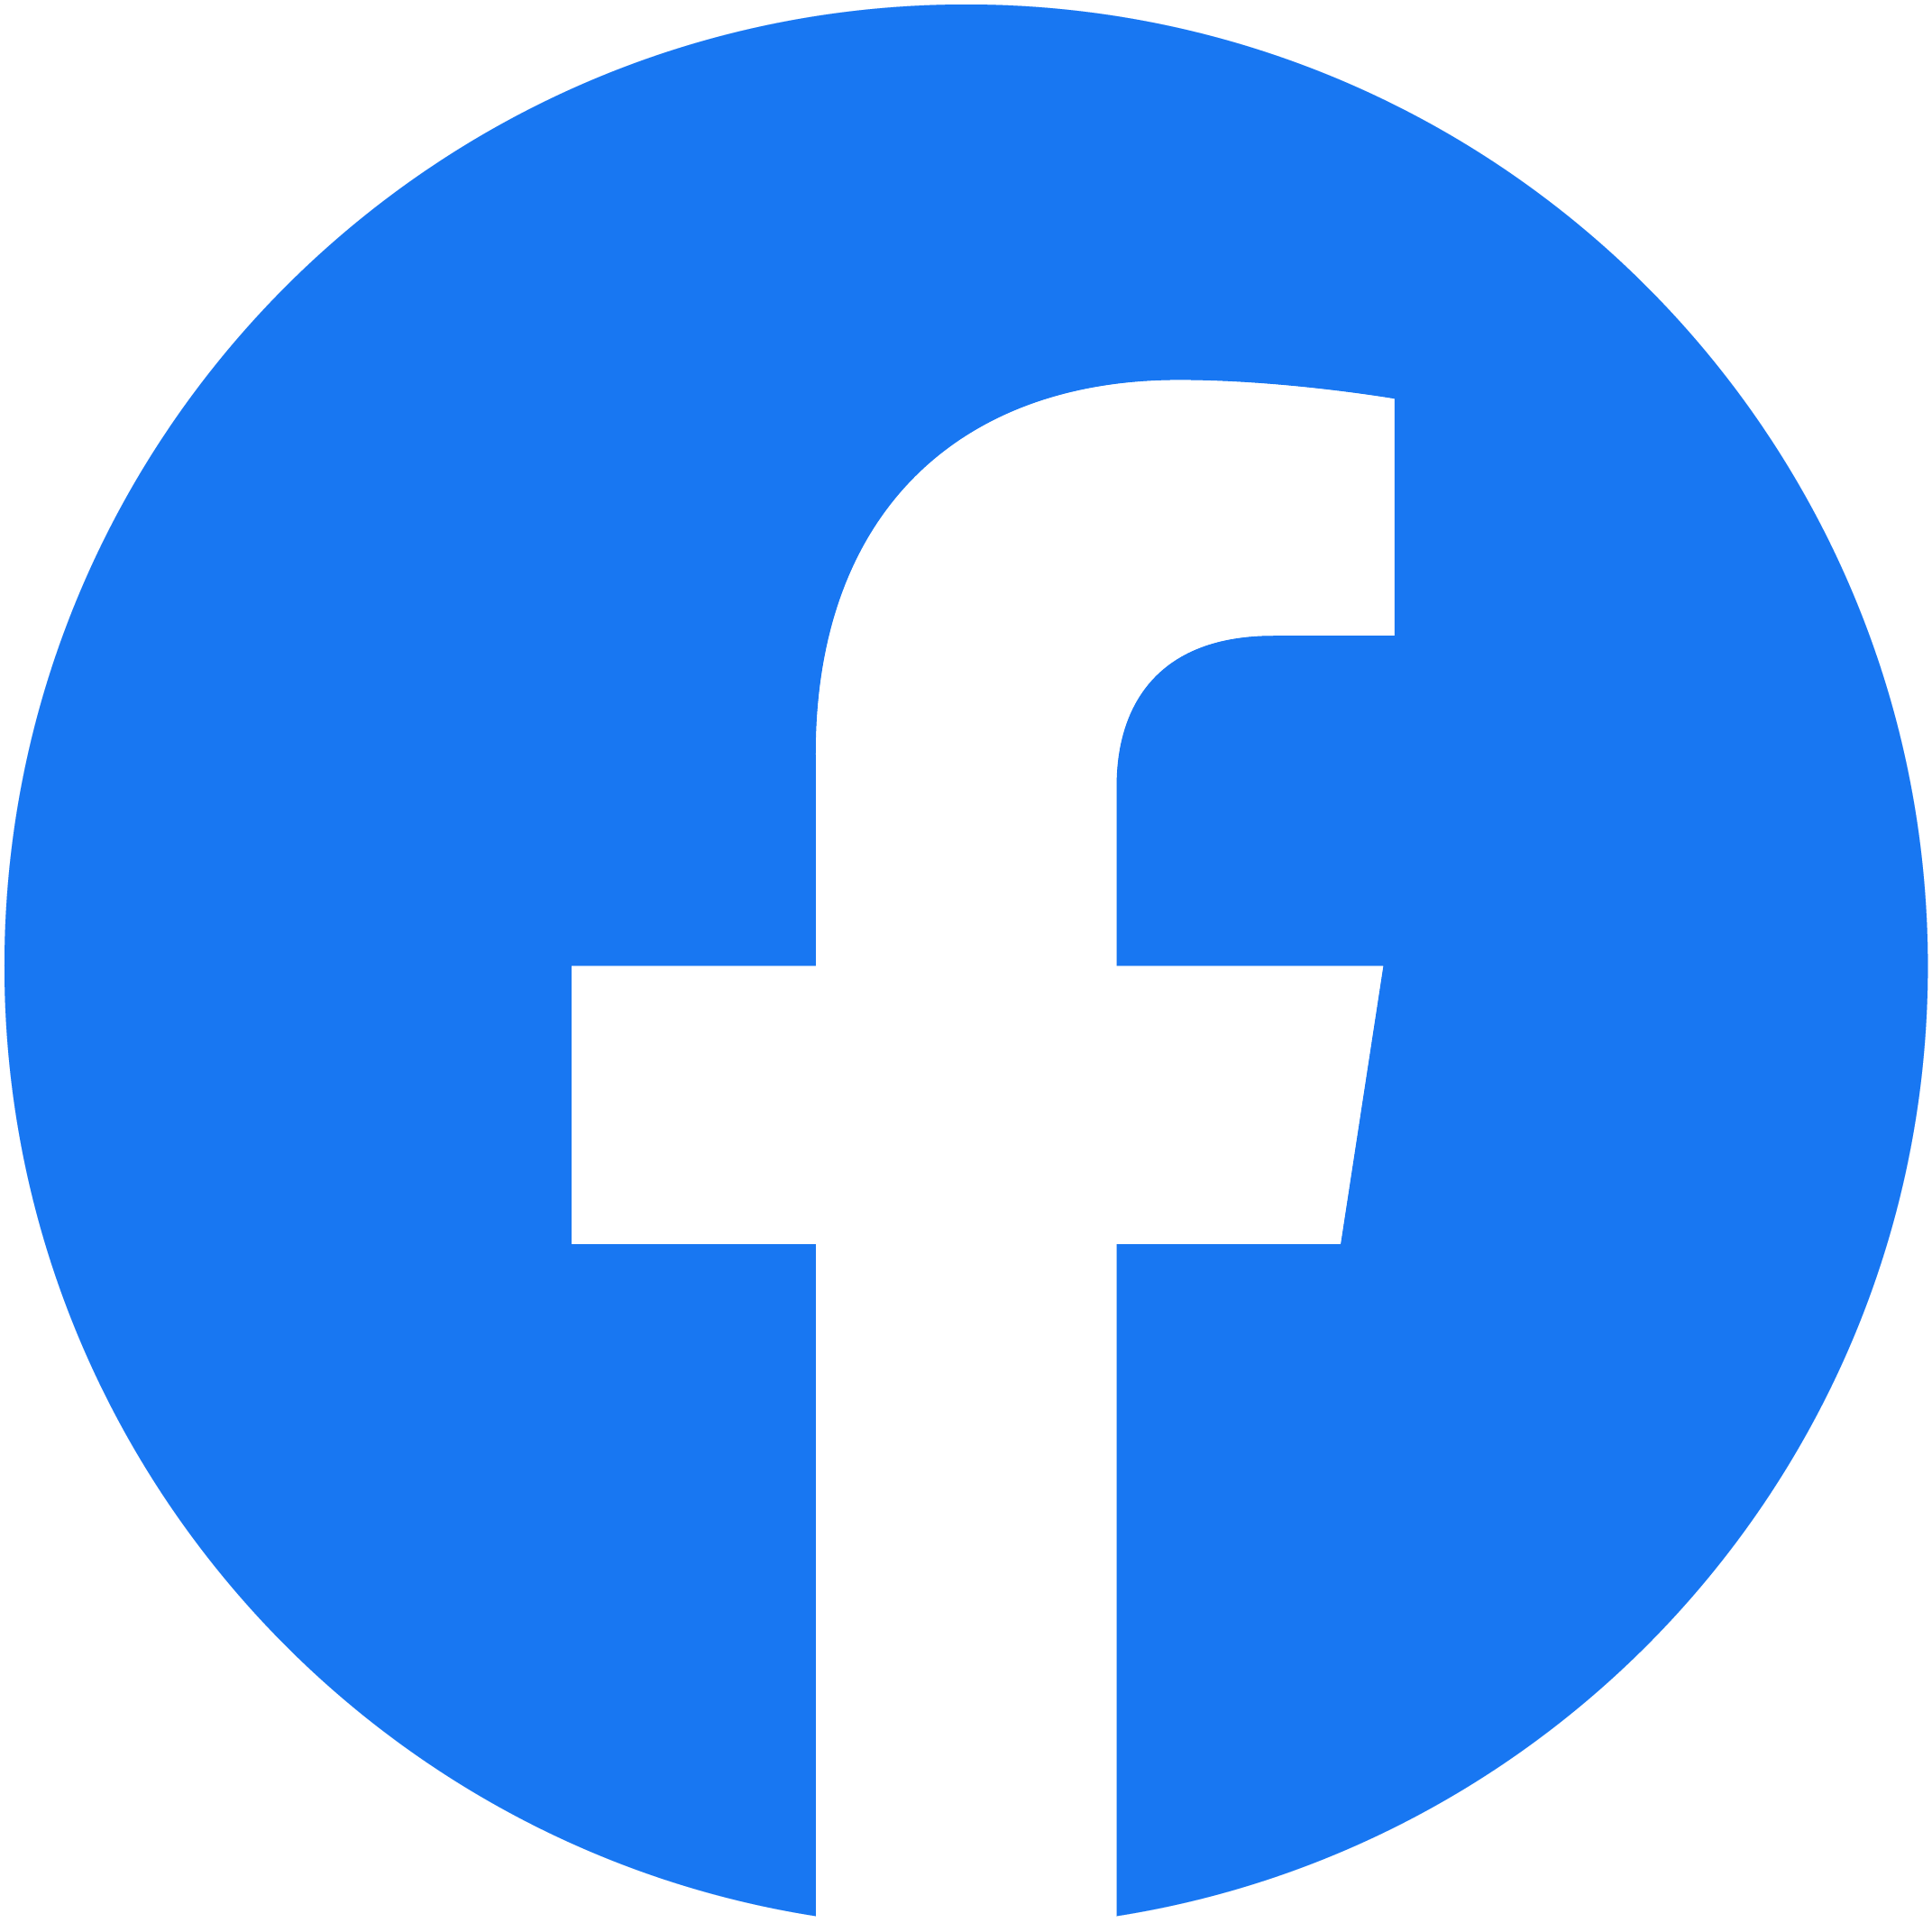 Facebook Logo Blue